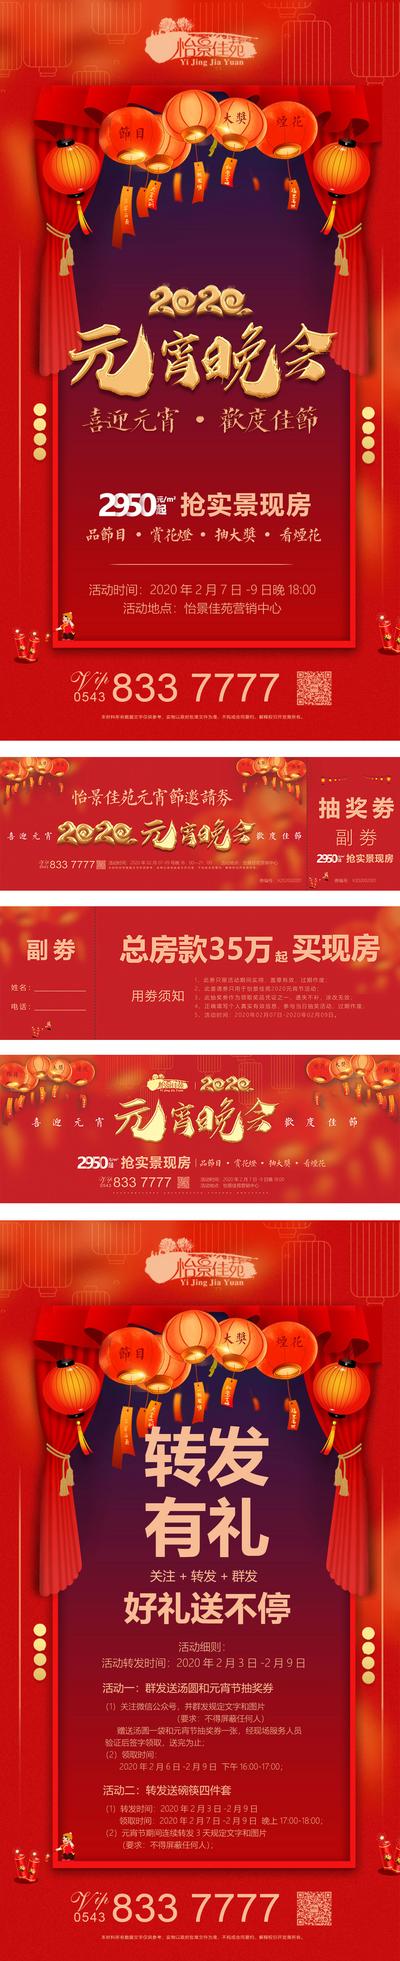 南门网 海报 广告展板 抽奖券 房地产 2020 元宵节 中国传统节日 晚会 喜庆 红金 灯笼